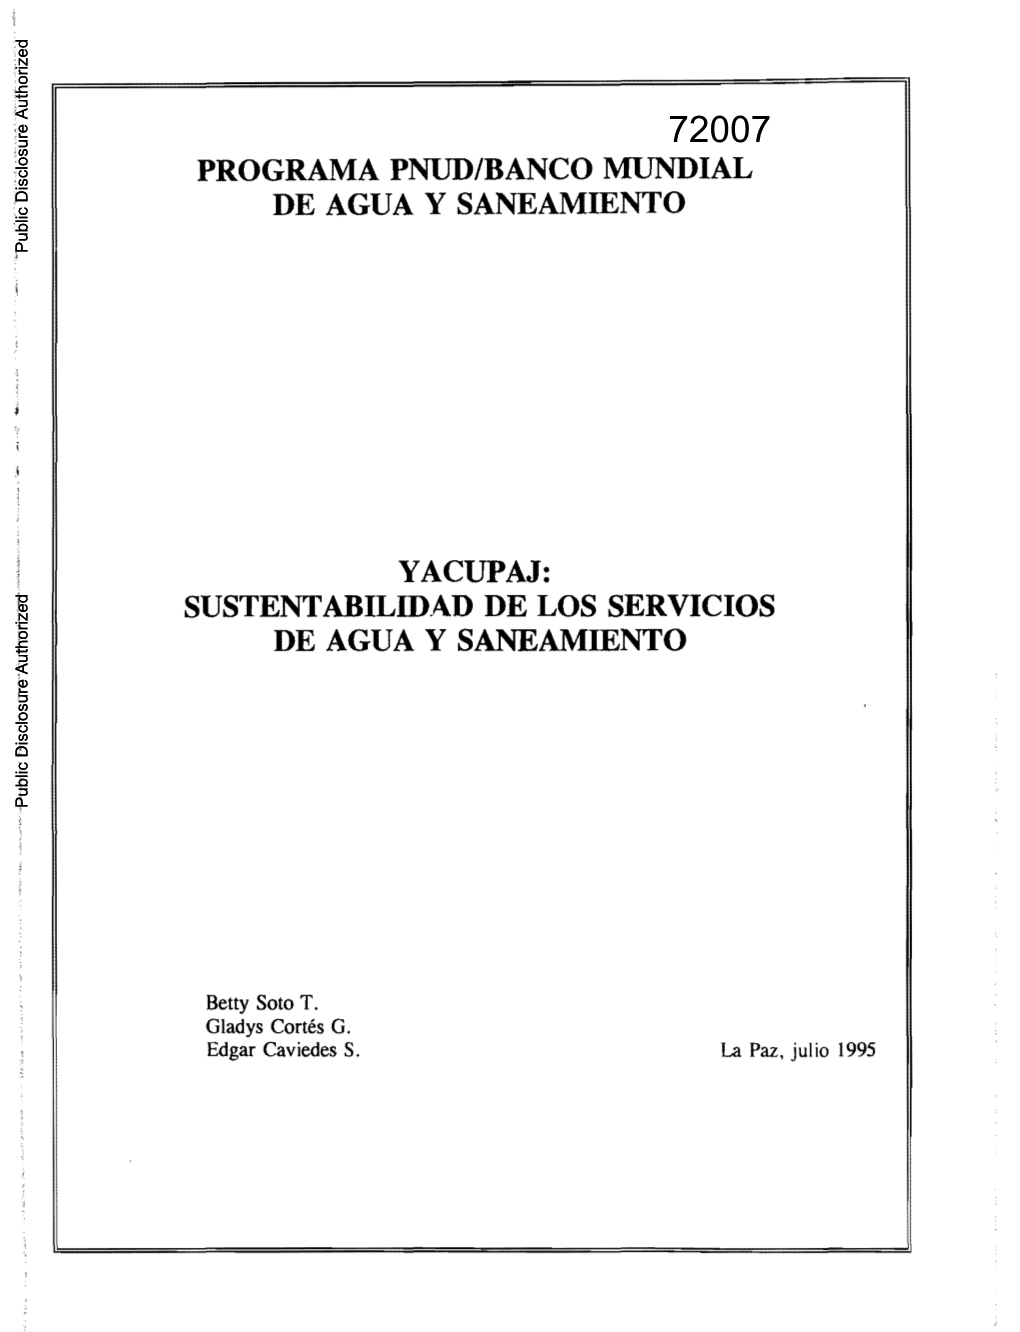 SUSTENTABILIDAD DE LOS SERVICIOS DE AGUA Y SANEAMIENTO Public Disclosure Authorized